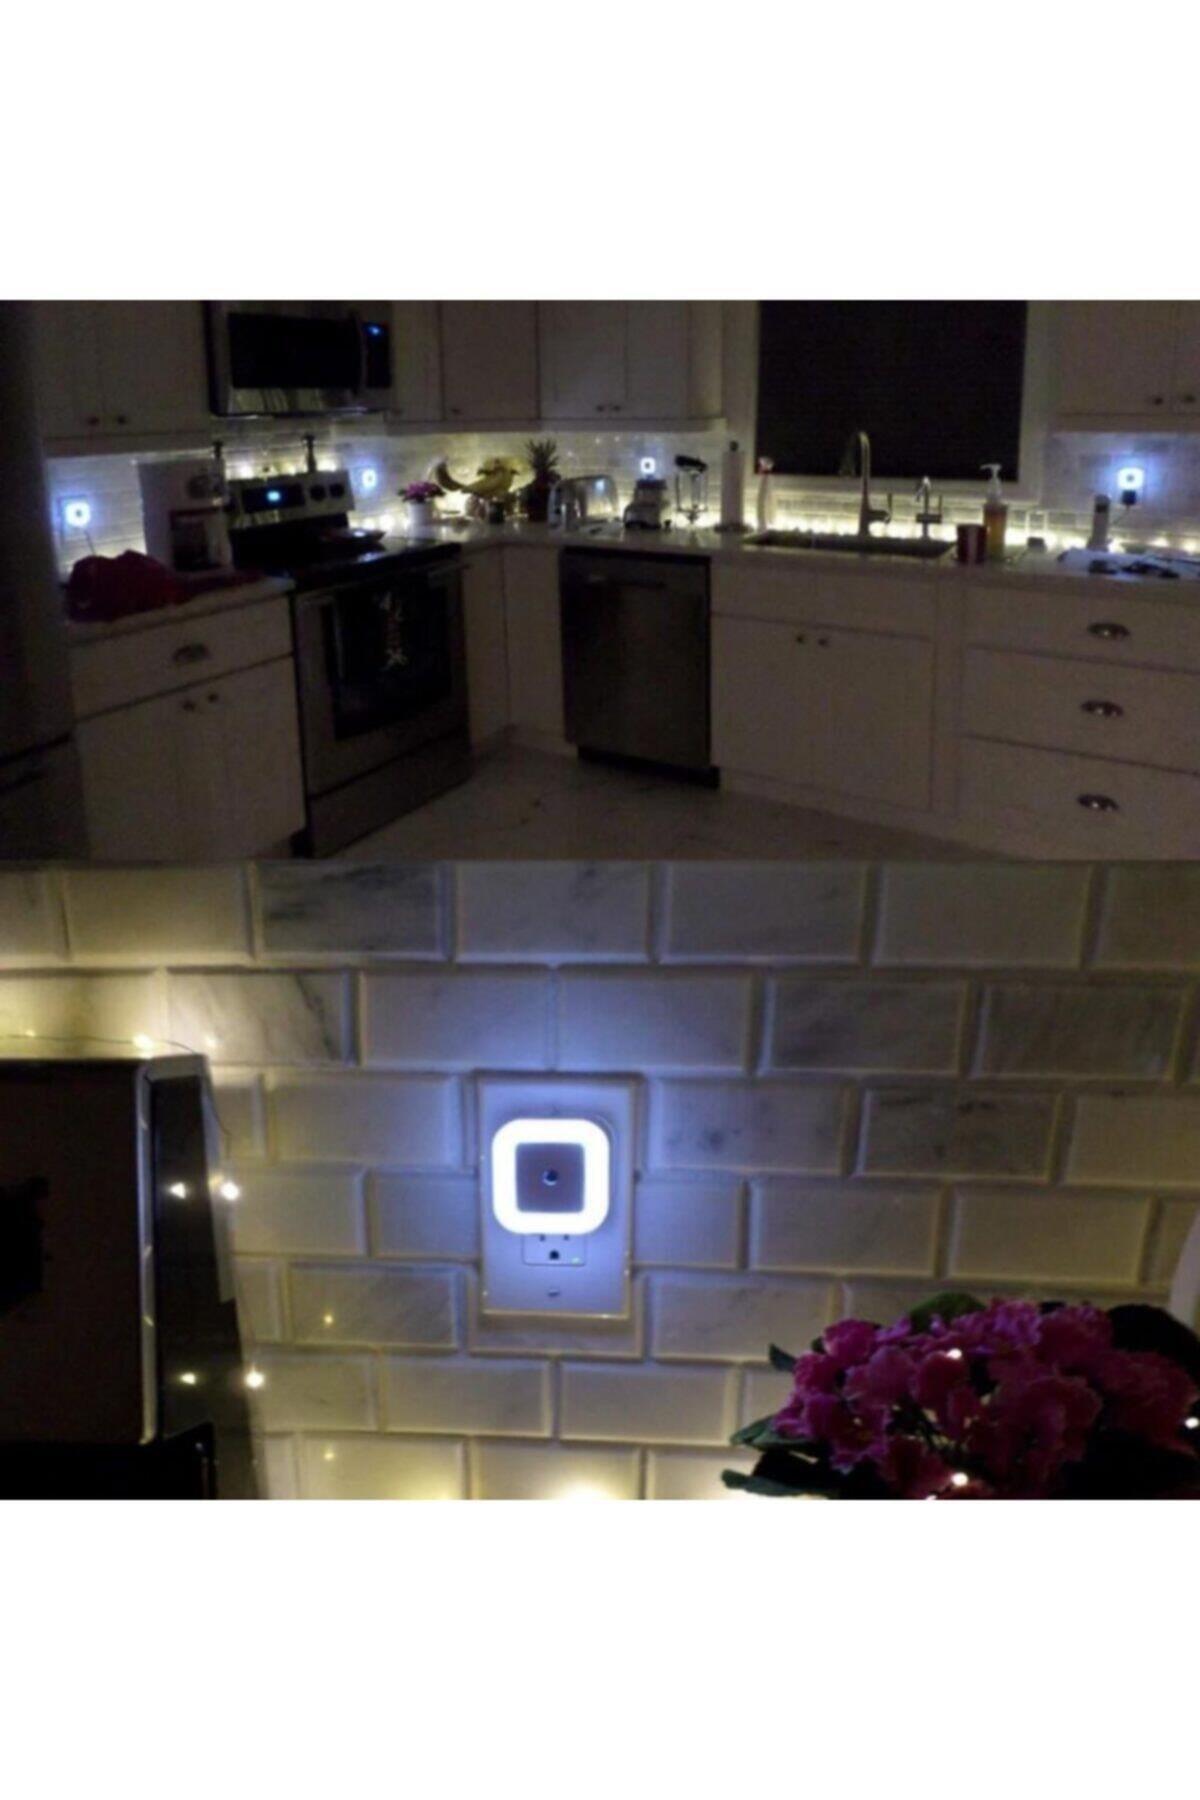 Karanlık Sensörlü Gece Lambası Tak Çalıştır Karışık Renkli Spot Led Işık